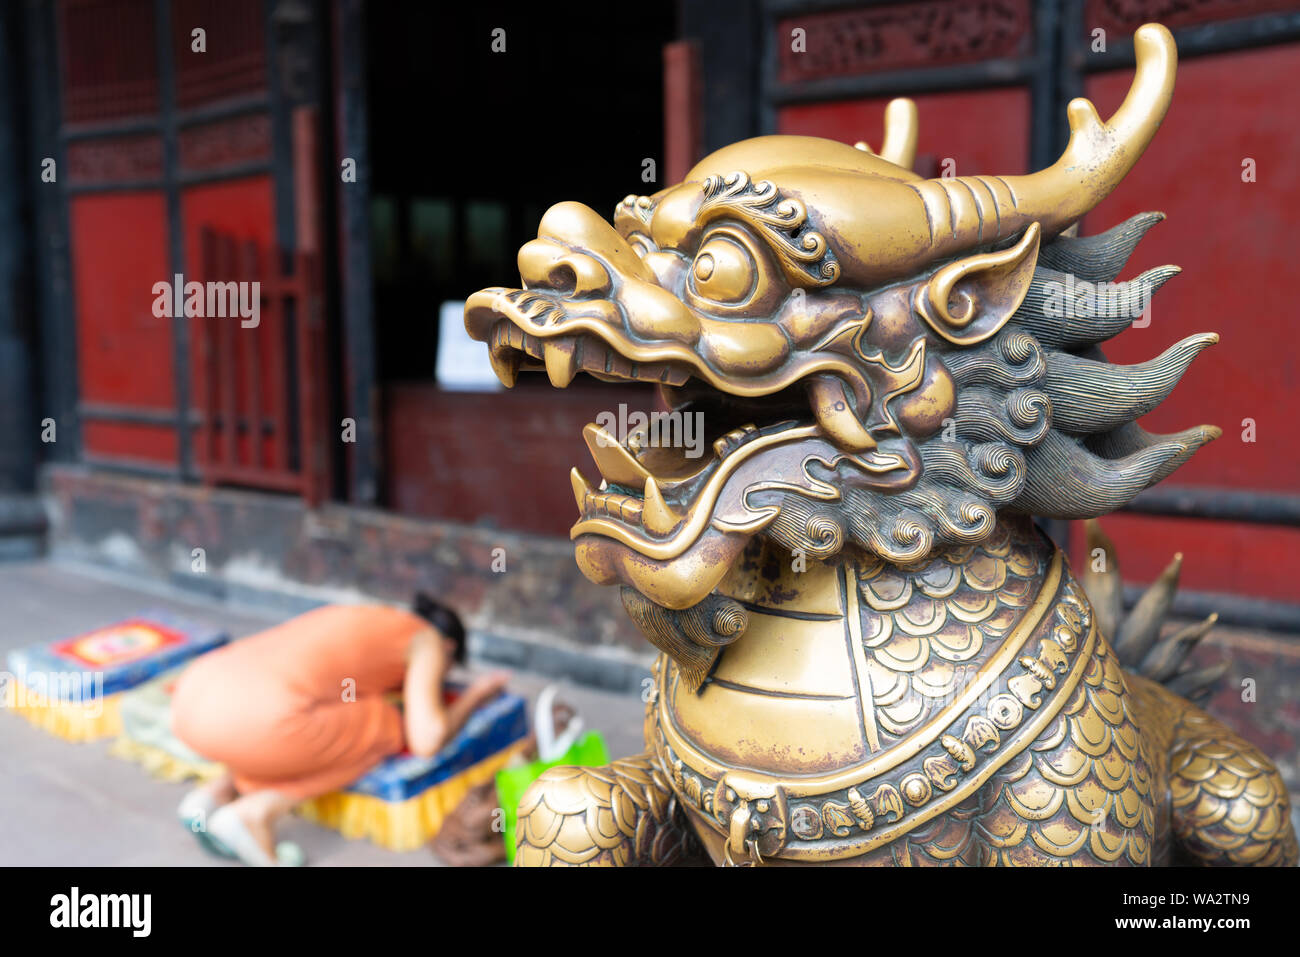 La testa di un Leone d'oro statua al monastero di Wenshu e sfocata donna cinese pregando inginocchiato in background in Chengdu Sichuan in Cina Foto Stock